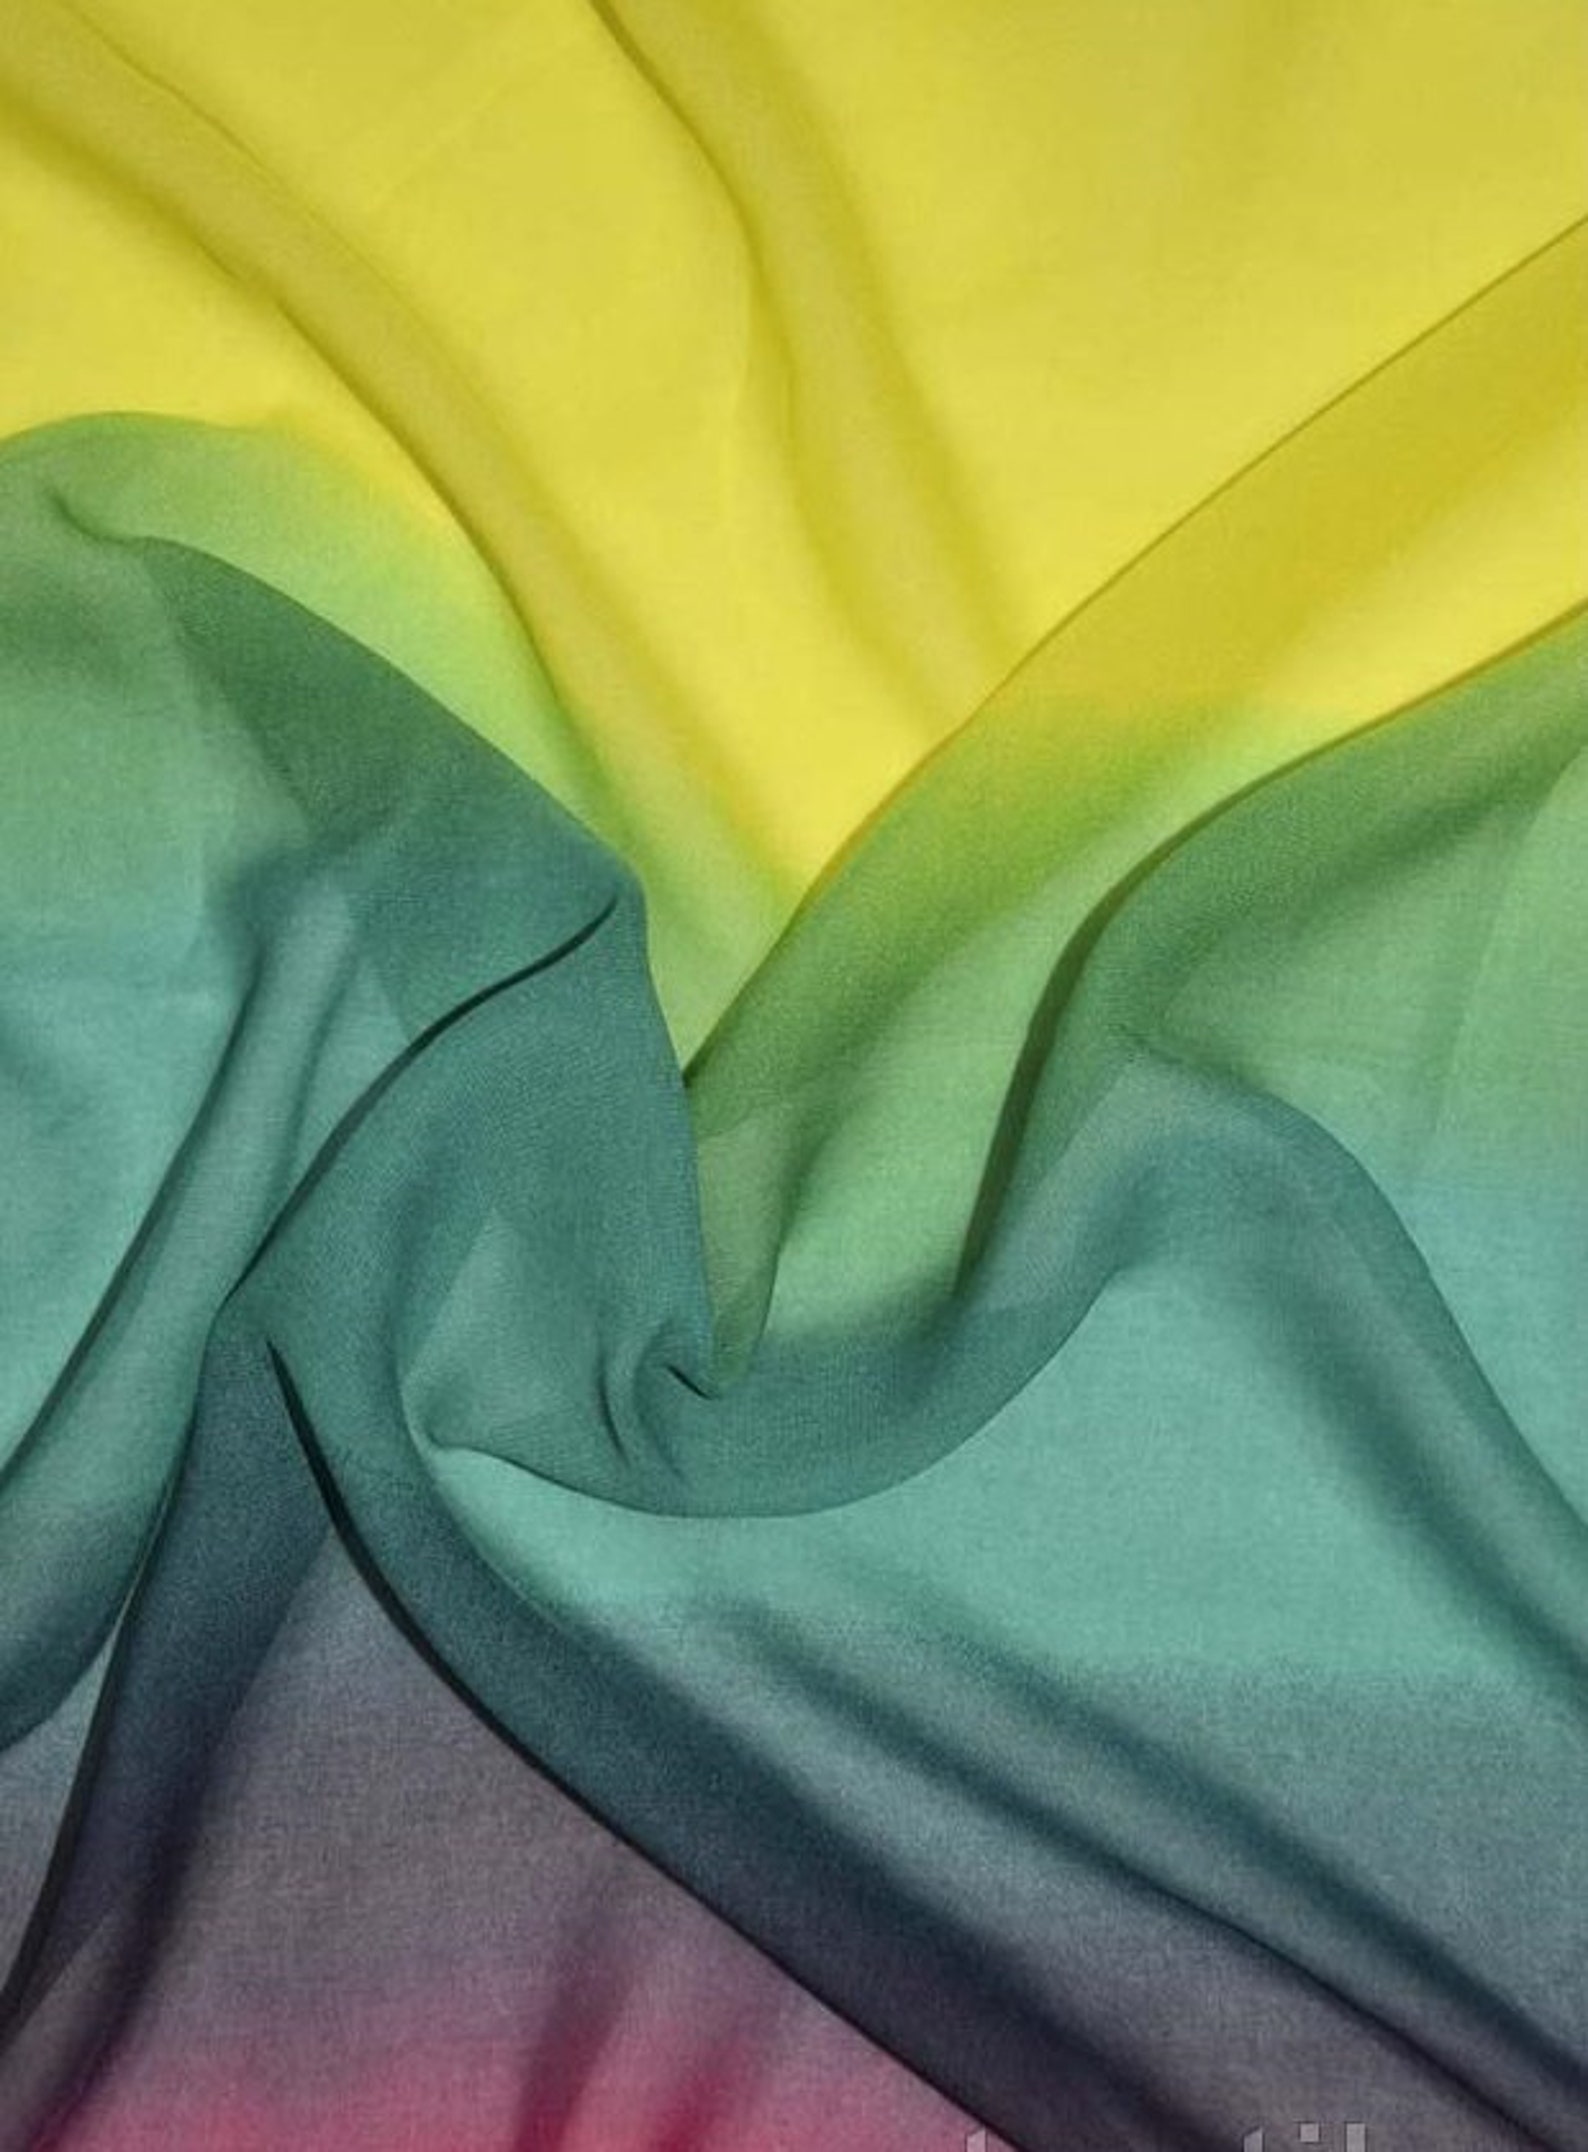 Ombre chiffon Green chiffon fabric Chiffon rainbow Polyester | Etsy